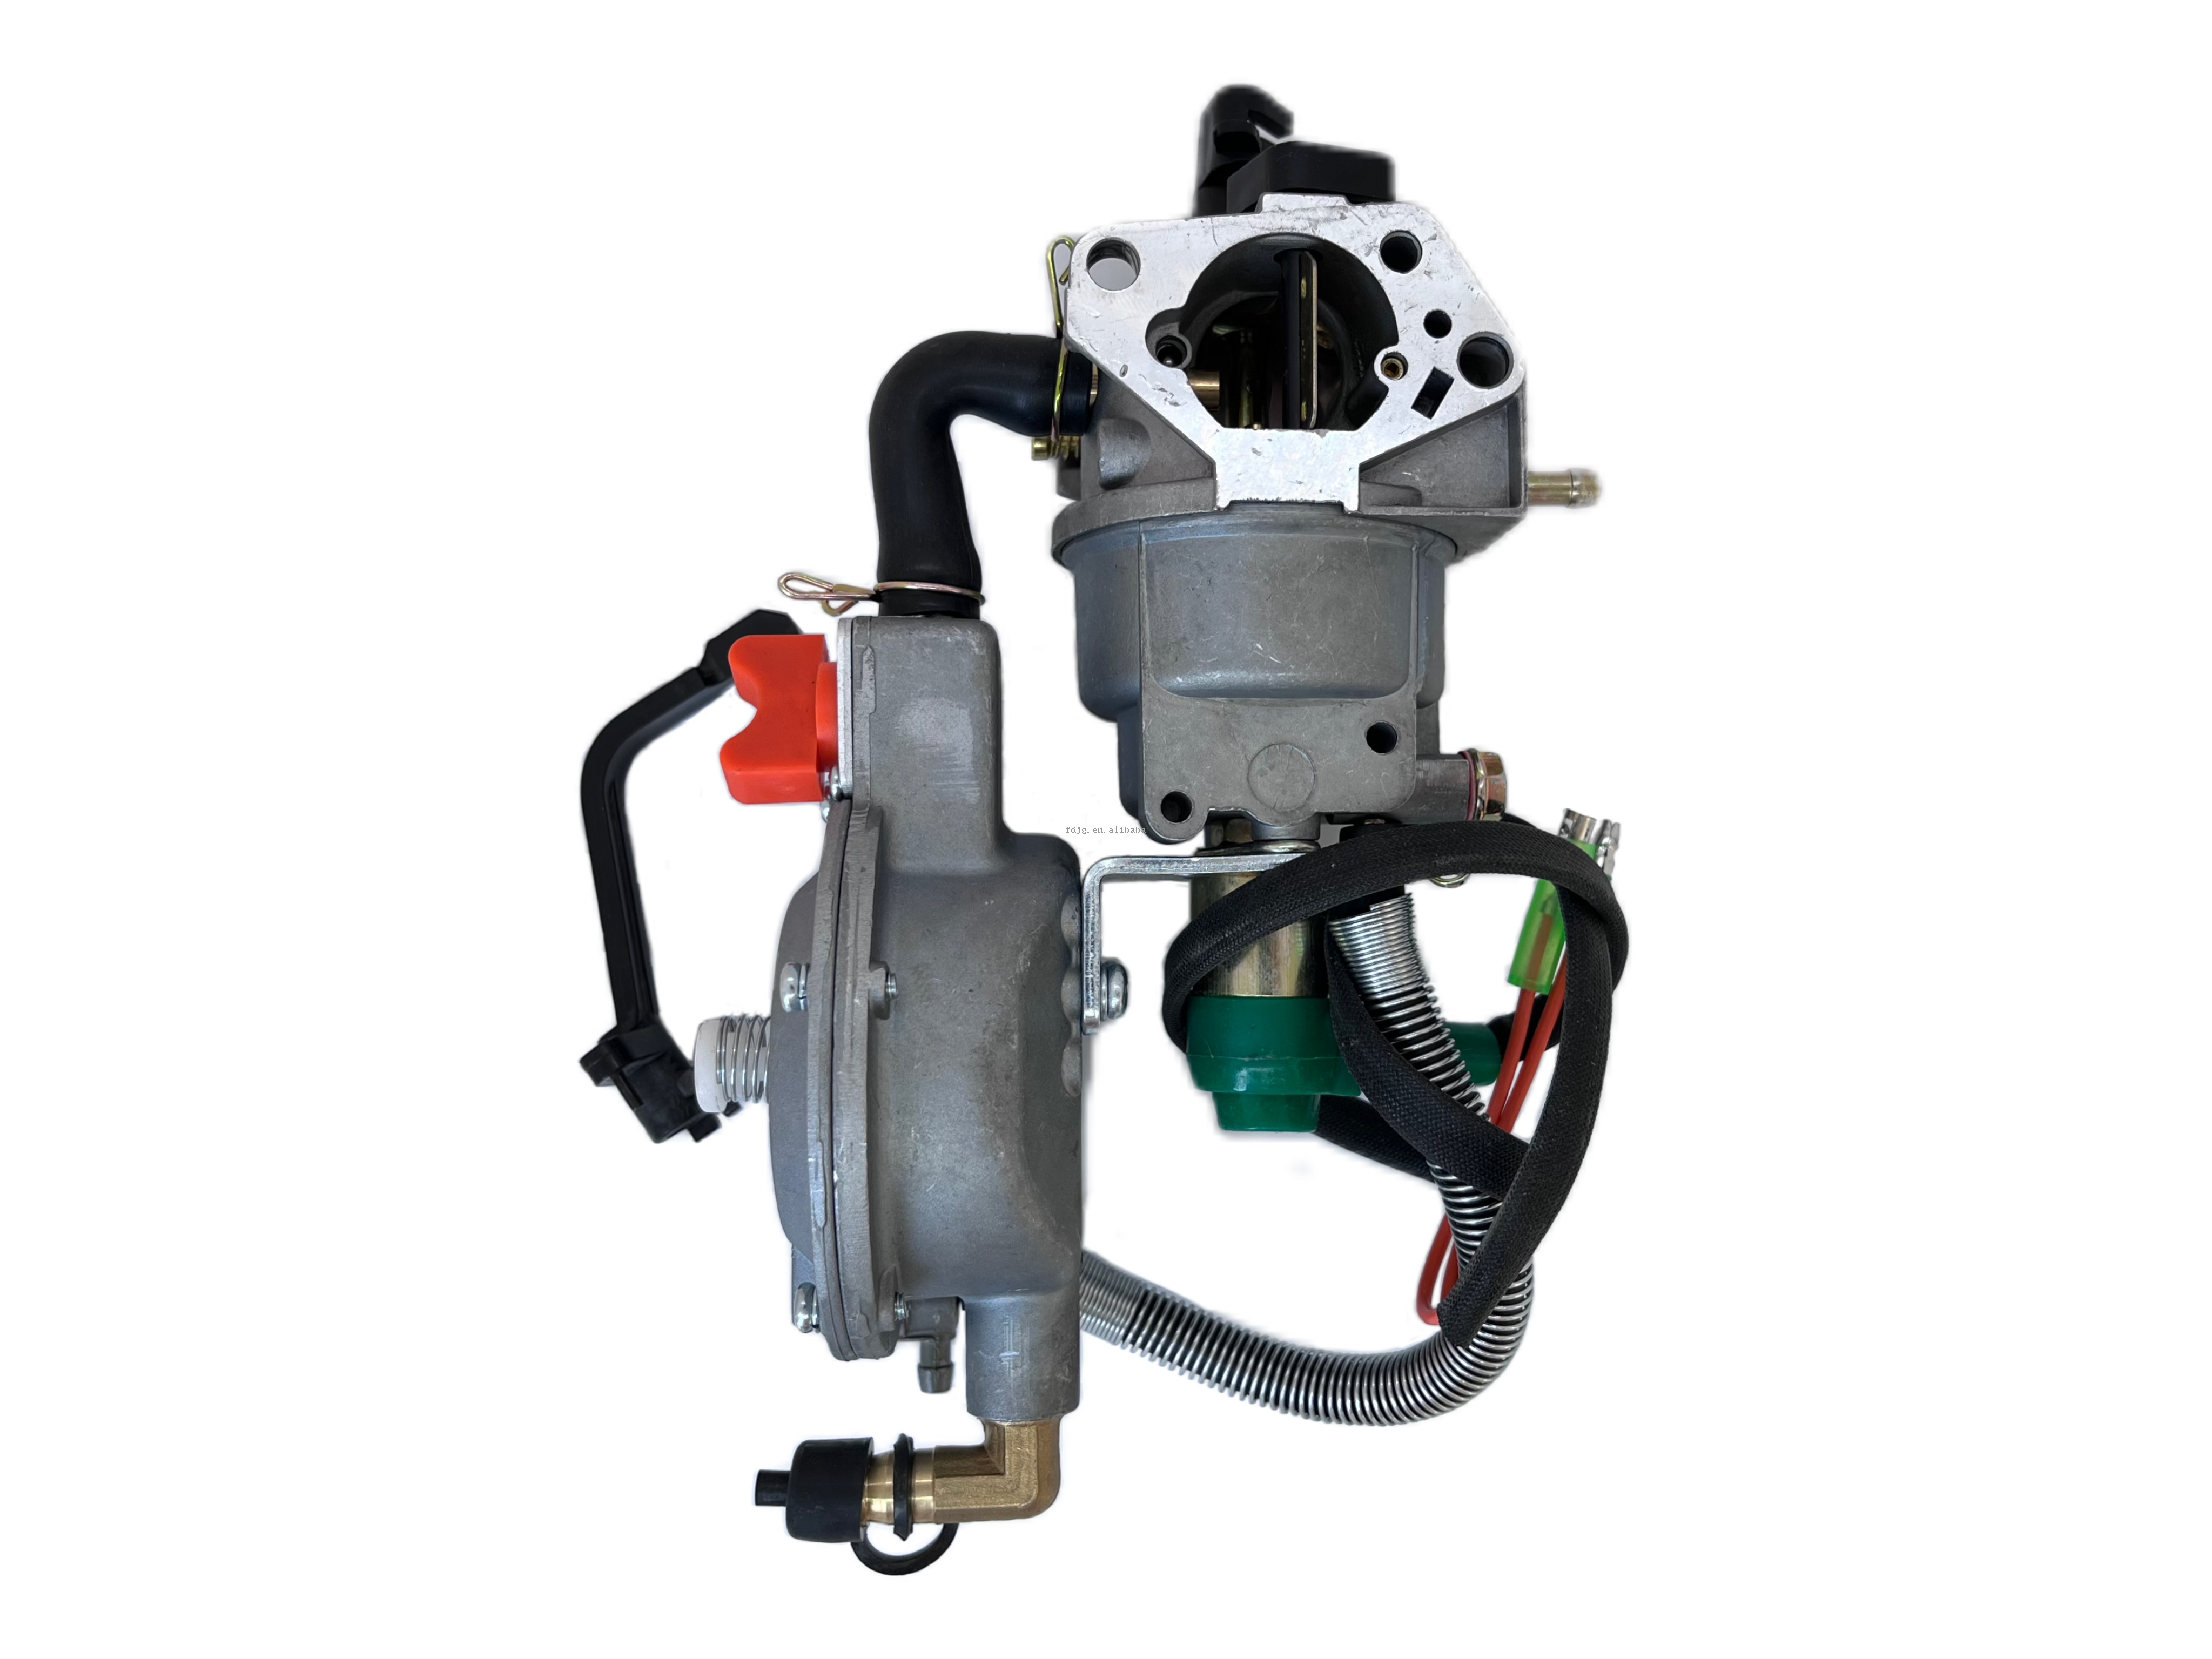  Kit de Conversion de carburateur à double carburant LPG NG 192 pour générateur GX460